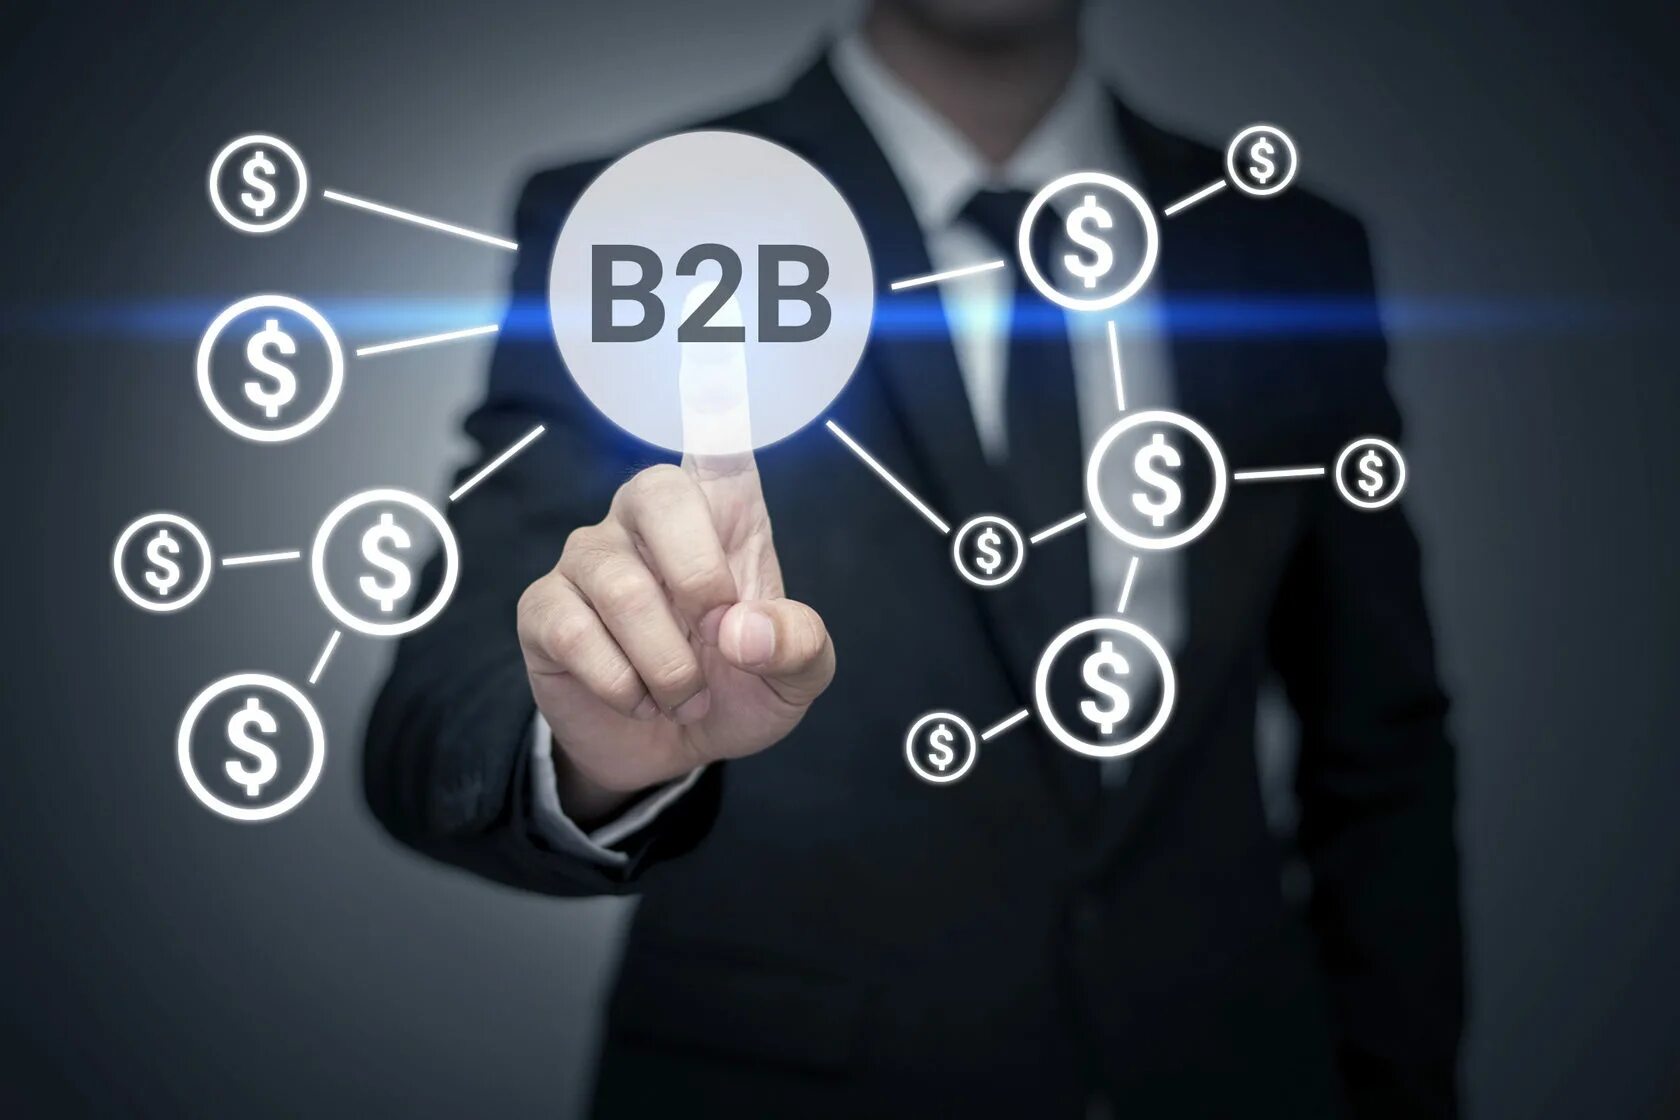 2 b рост. Бизнес для бизнеса b2b. B2b что это. B2b картинка. B2b услуги.